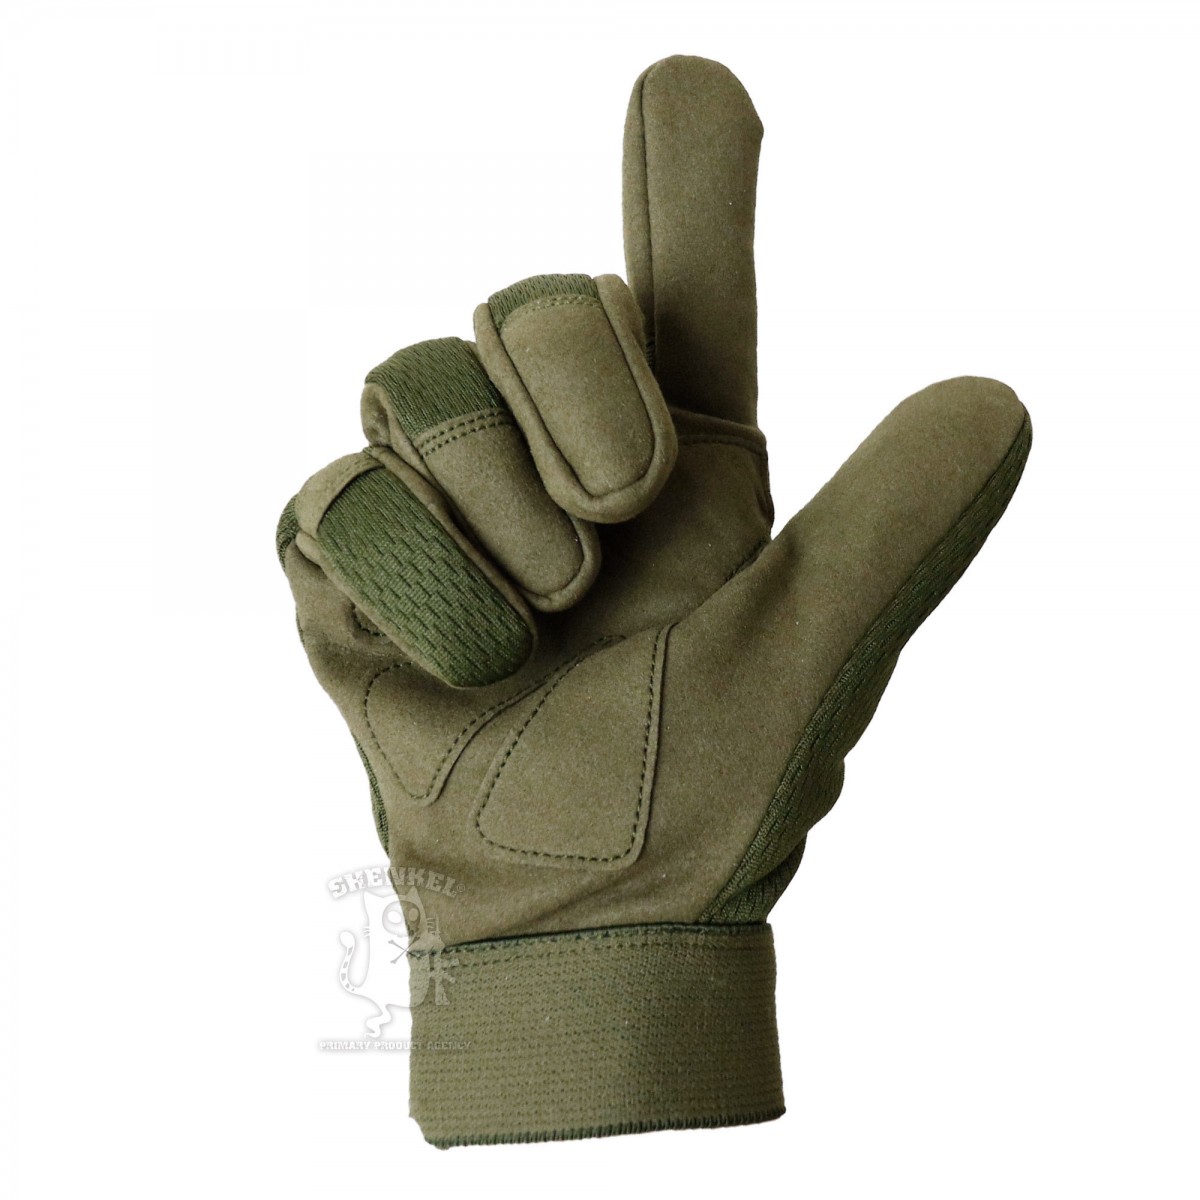 タクティカル グローブ メカニックタイプ  ( 緑 オリーブドラブ SMLXLサイズ )軽量 速乾 サバゲー ミリタリー アウトドア 手袋 メンズ